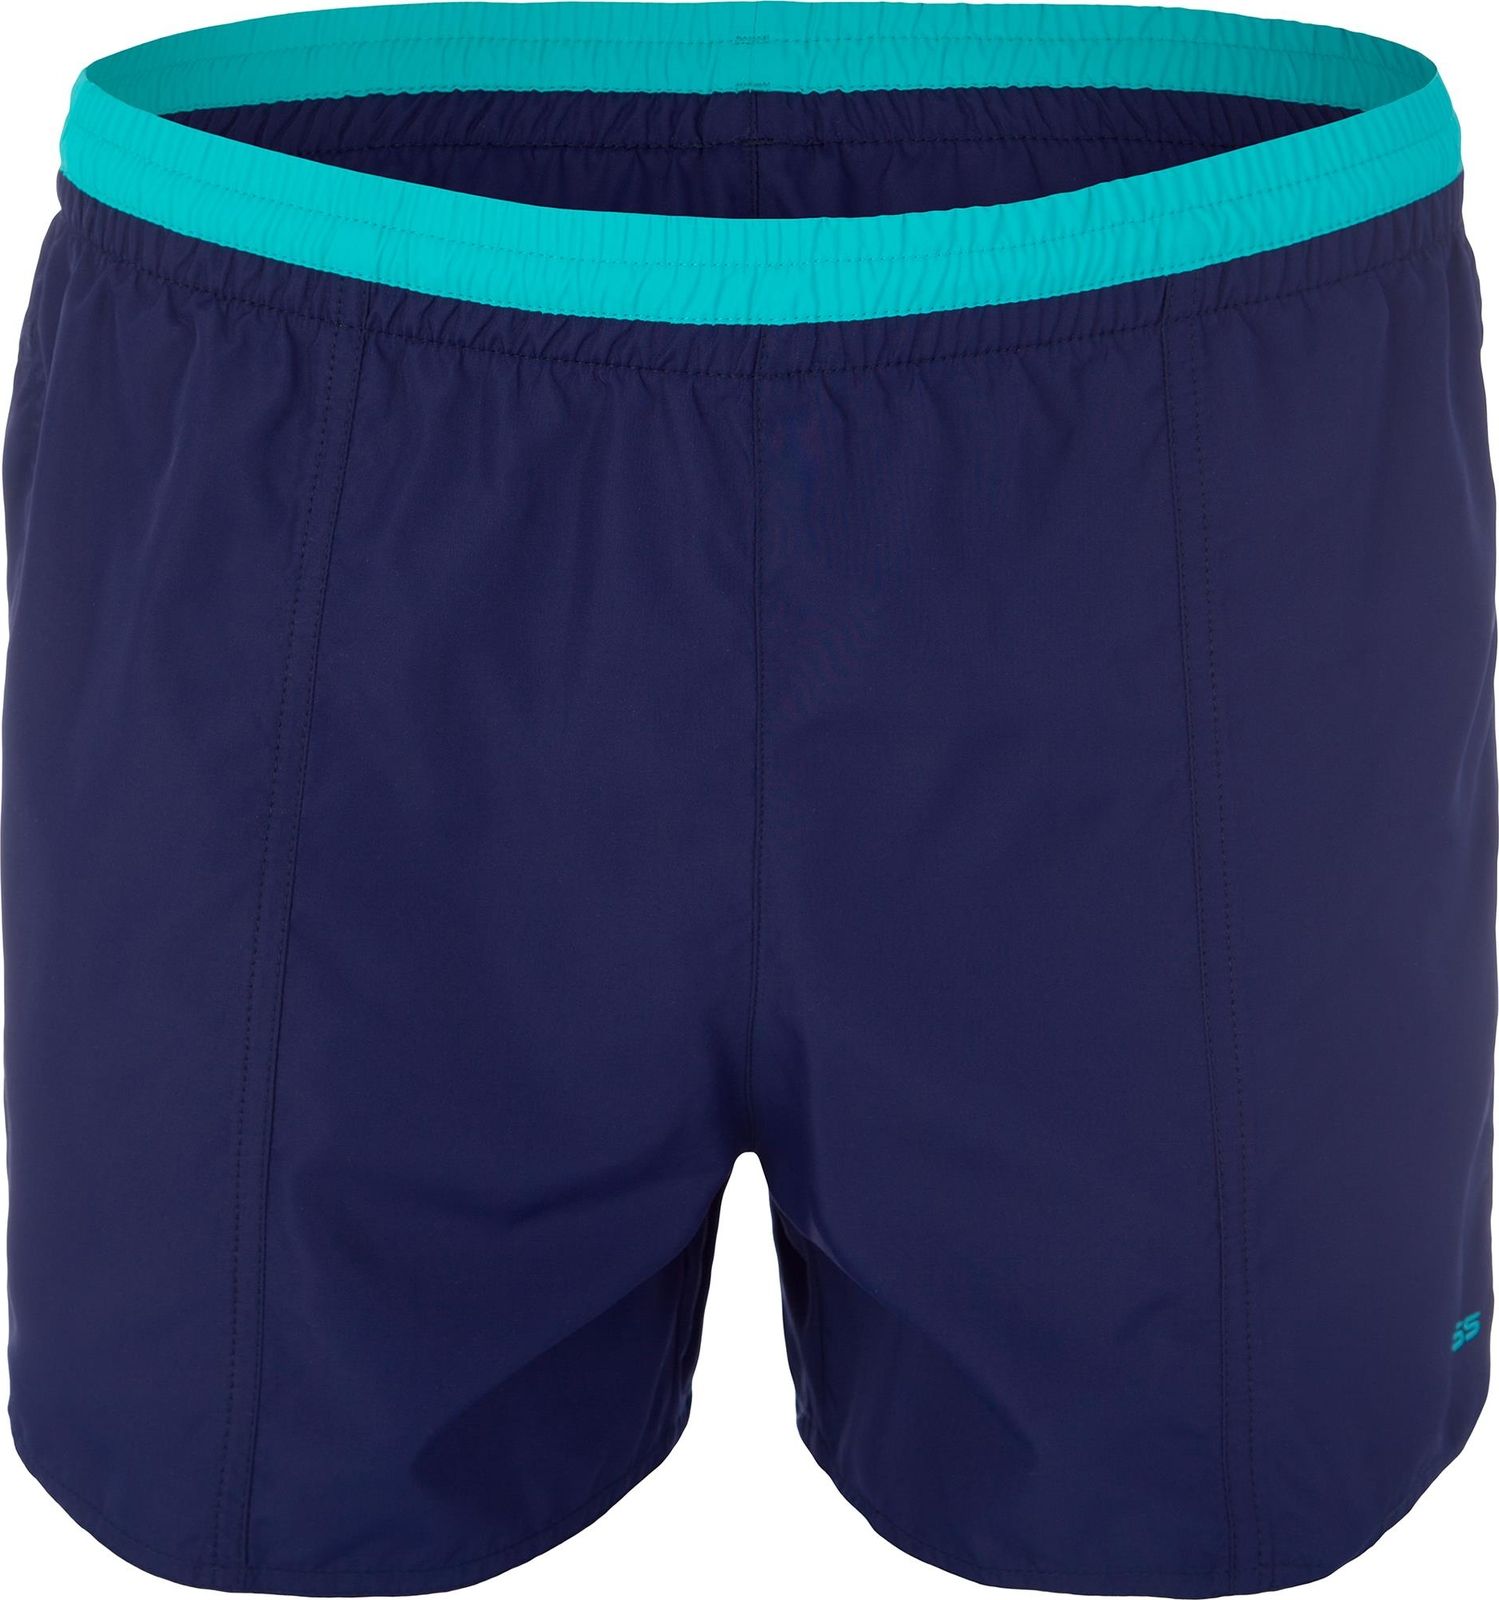     Joss Men's shorts, : . MSW40S6-V4.  56